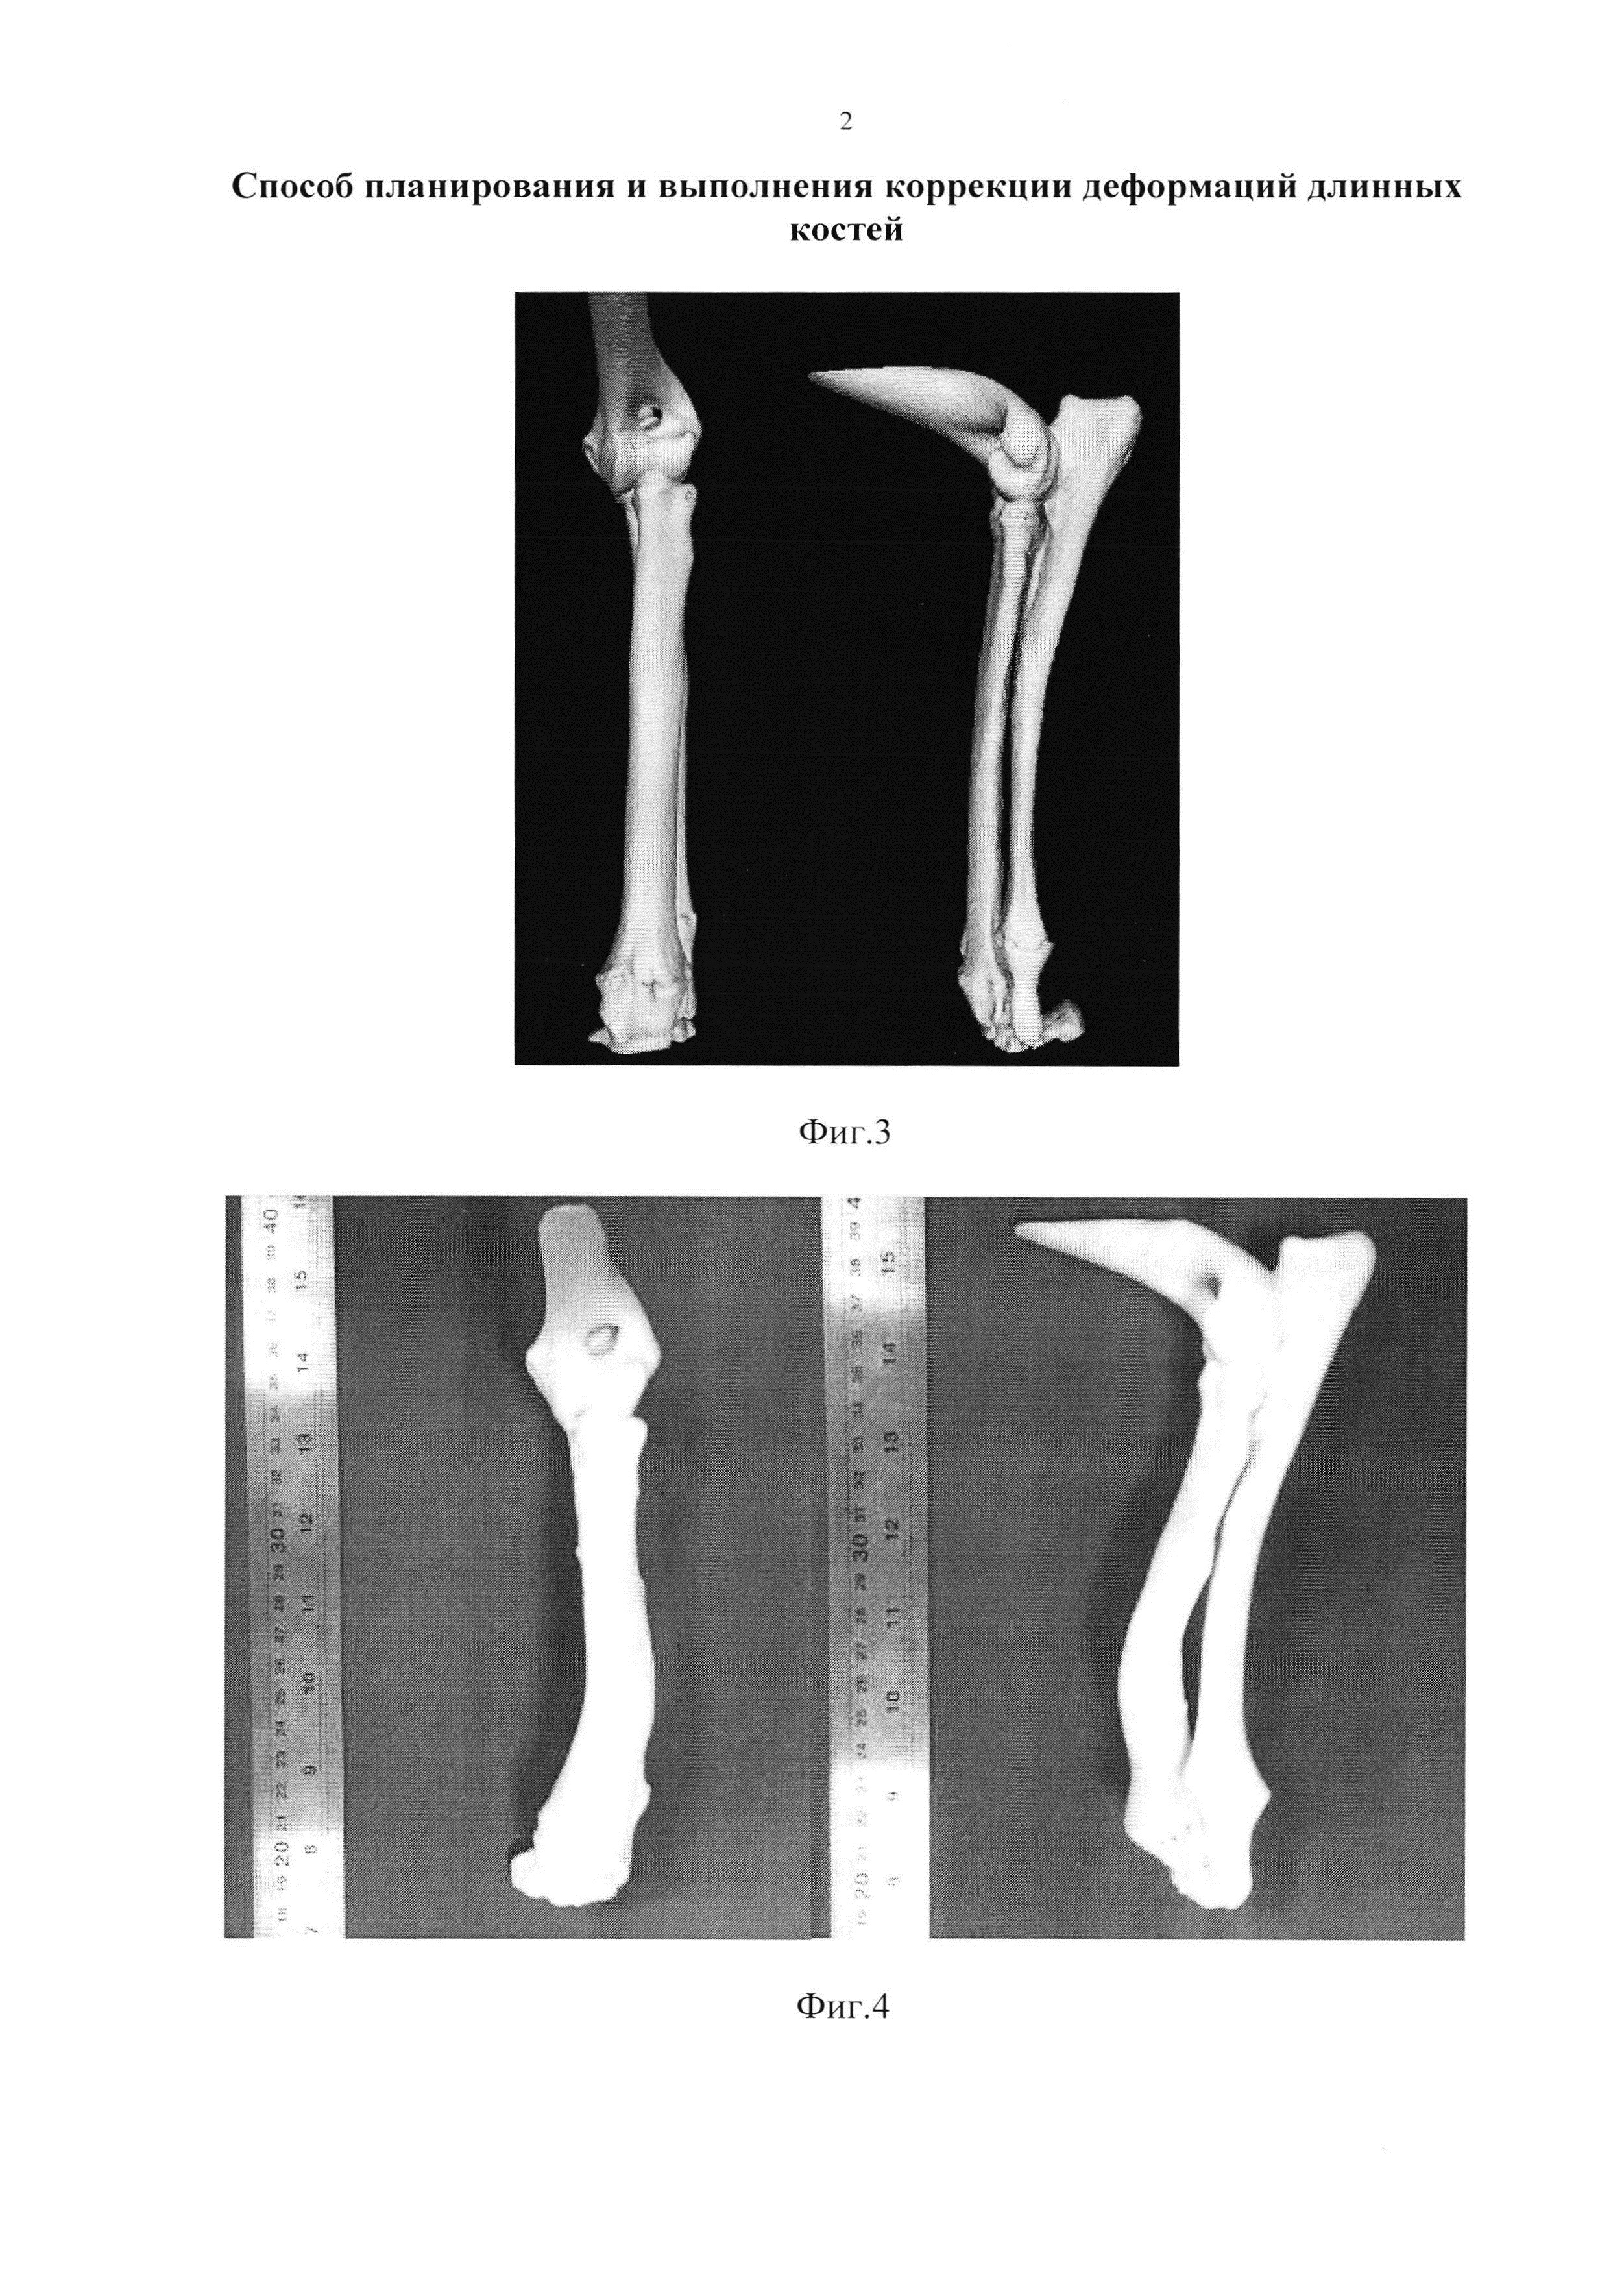 Способ планирования и выполнения коррекции деформаций длинных костей